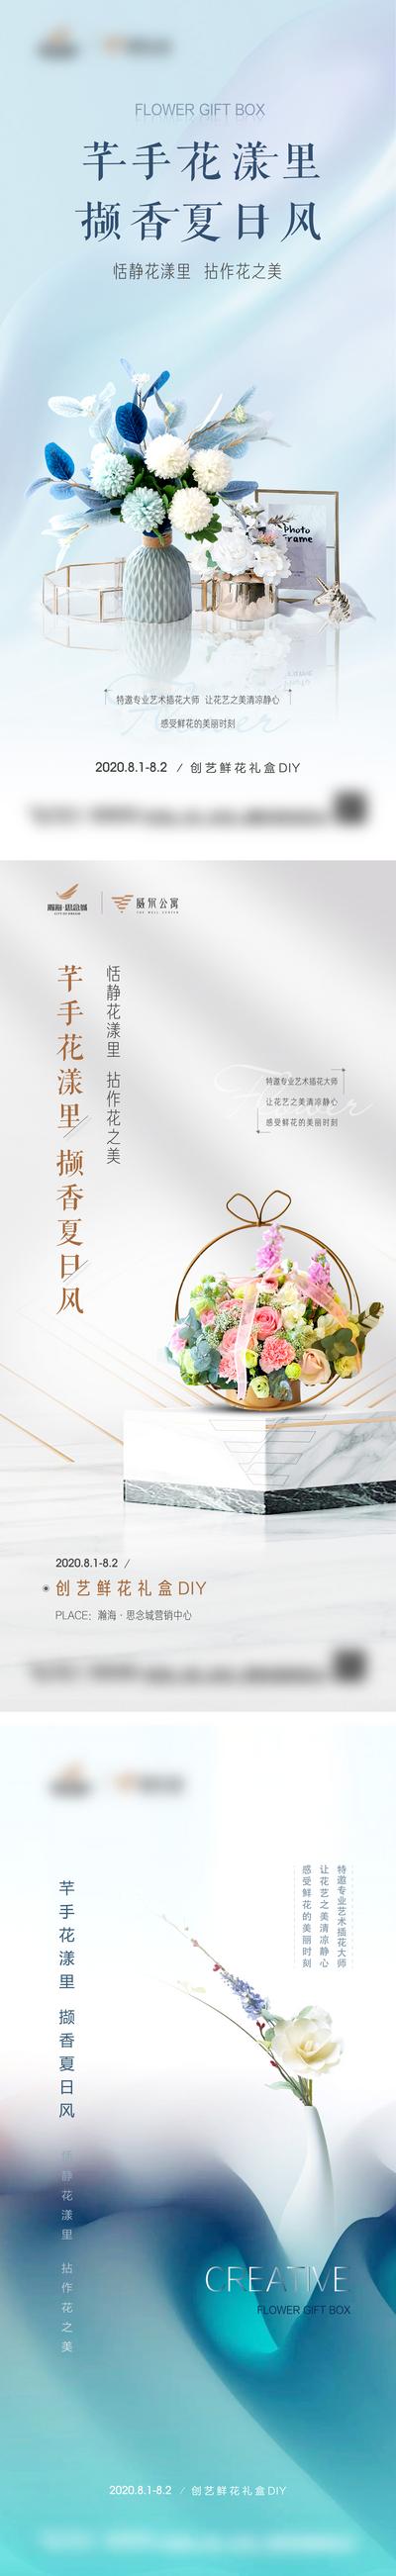 【南门网】海报 房地产 暖场活动 插花 鲜花 DIY 礼盒 花束 